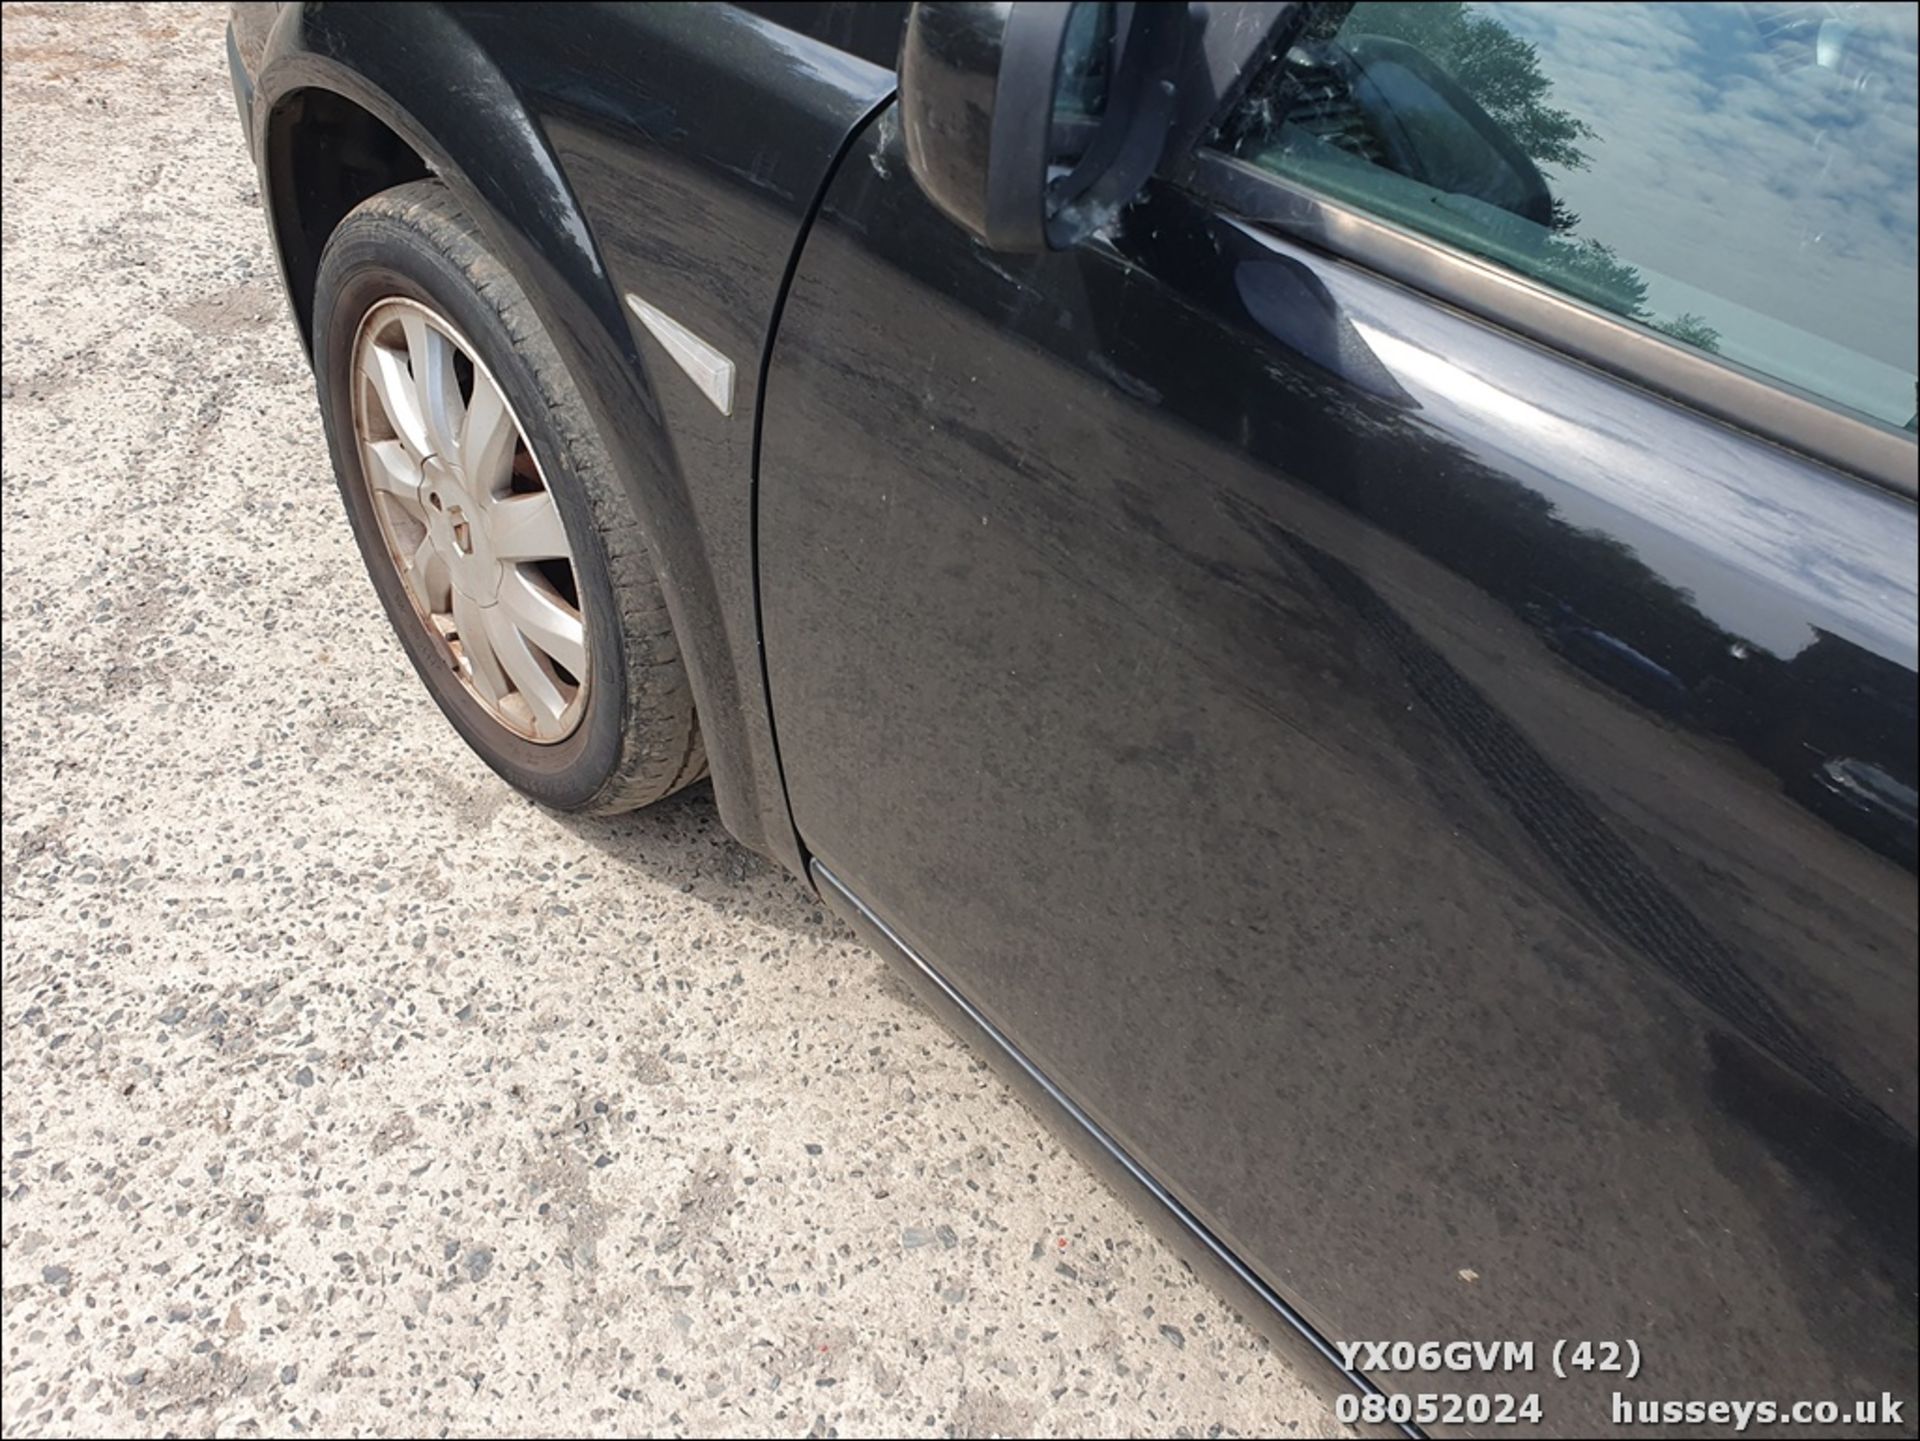 06/06 RENAULT MEGANE CAB DYNAM+ 16V - 1598cc 3dr Coupe (Black, 73k) - Image 43 of 51